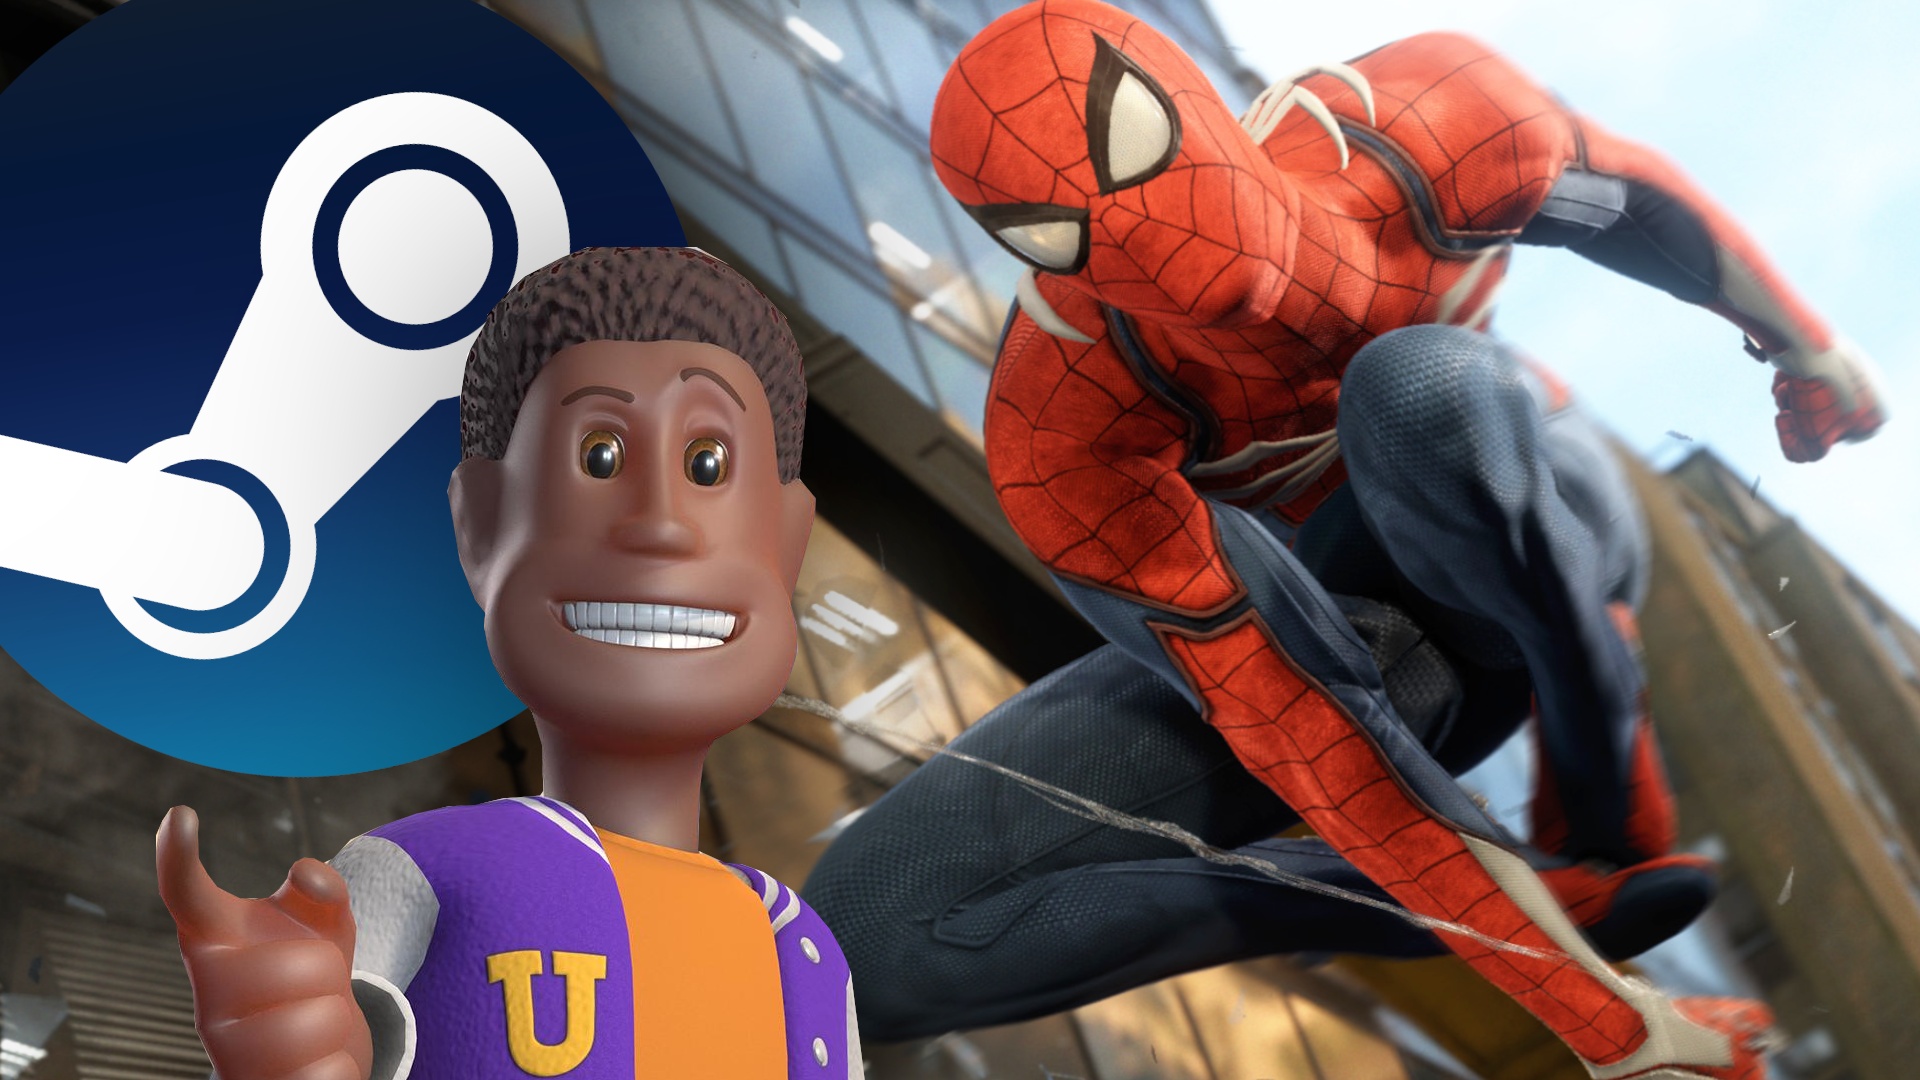 #Neu auf Steam und Co.: Diese Woche könnt ihr euch neben Spider-Man auf eine Ladung Aufbau-Spiele freuen